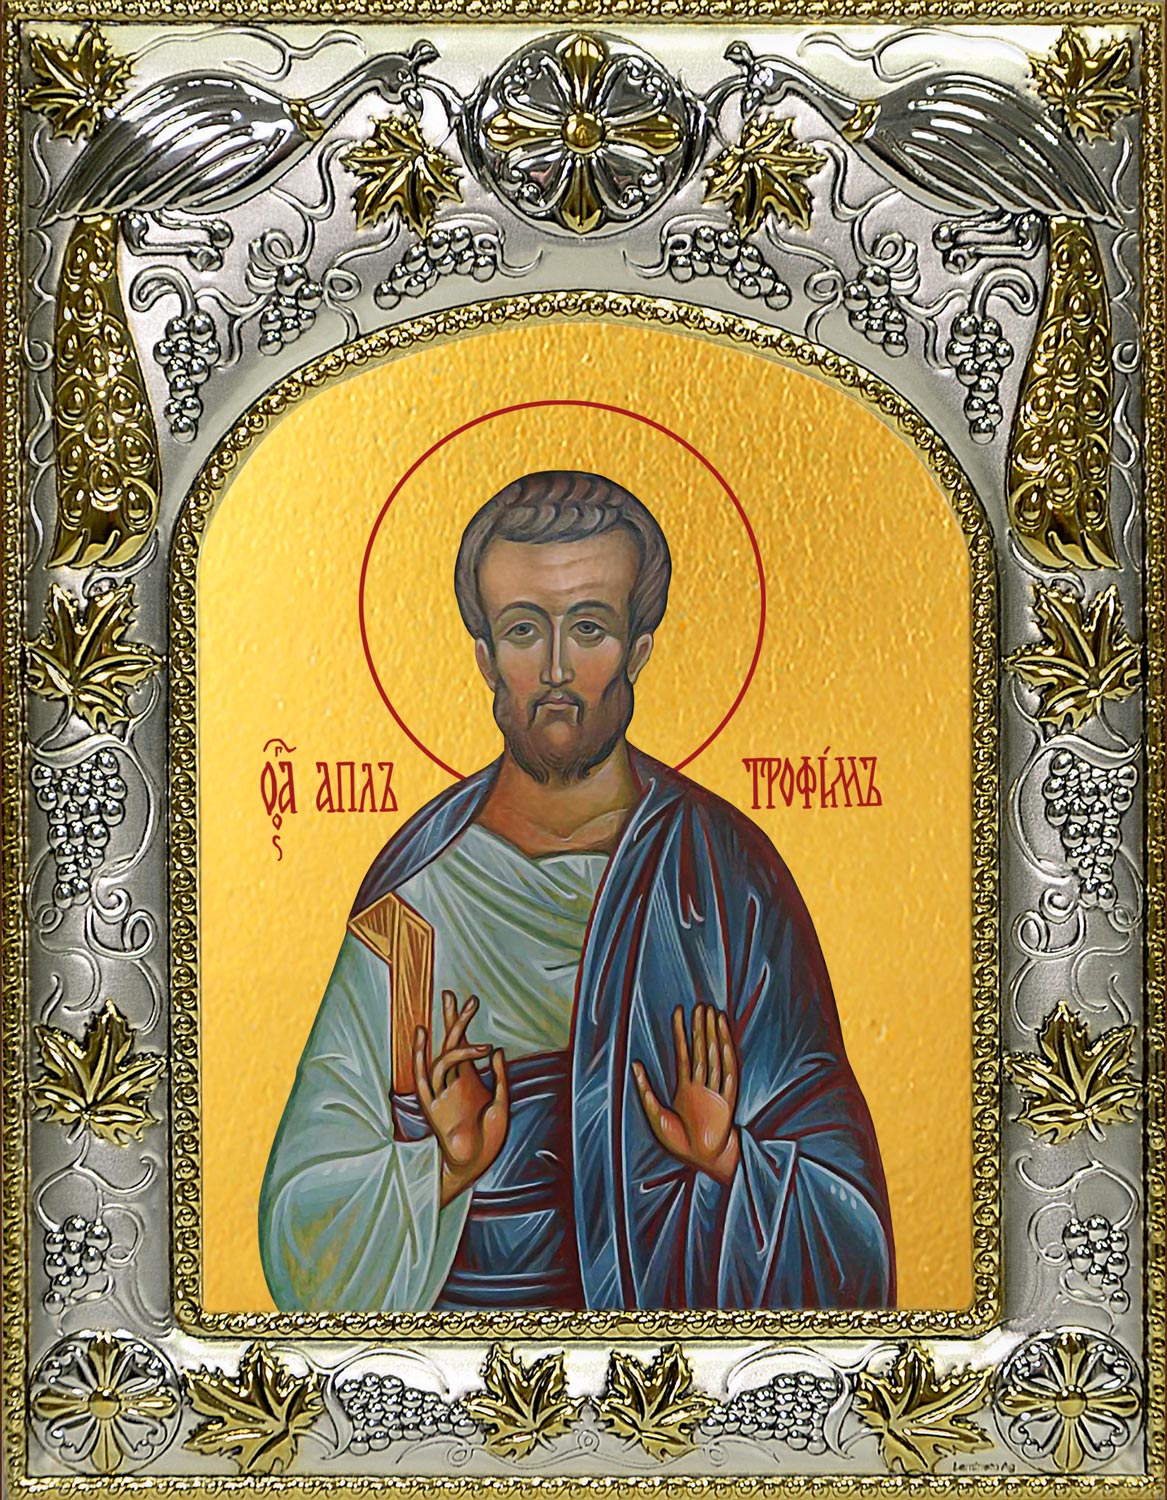 купить икону святой Трофим апостол